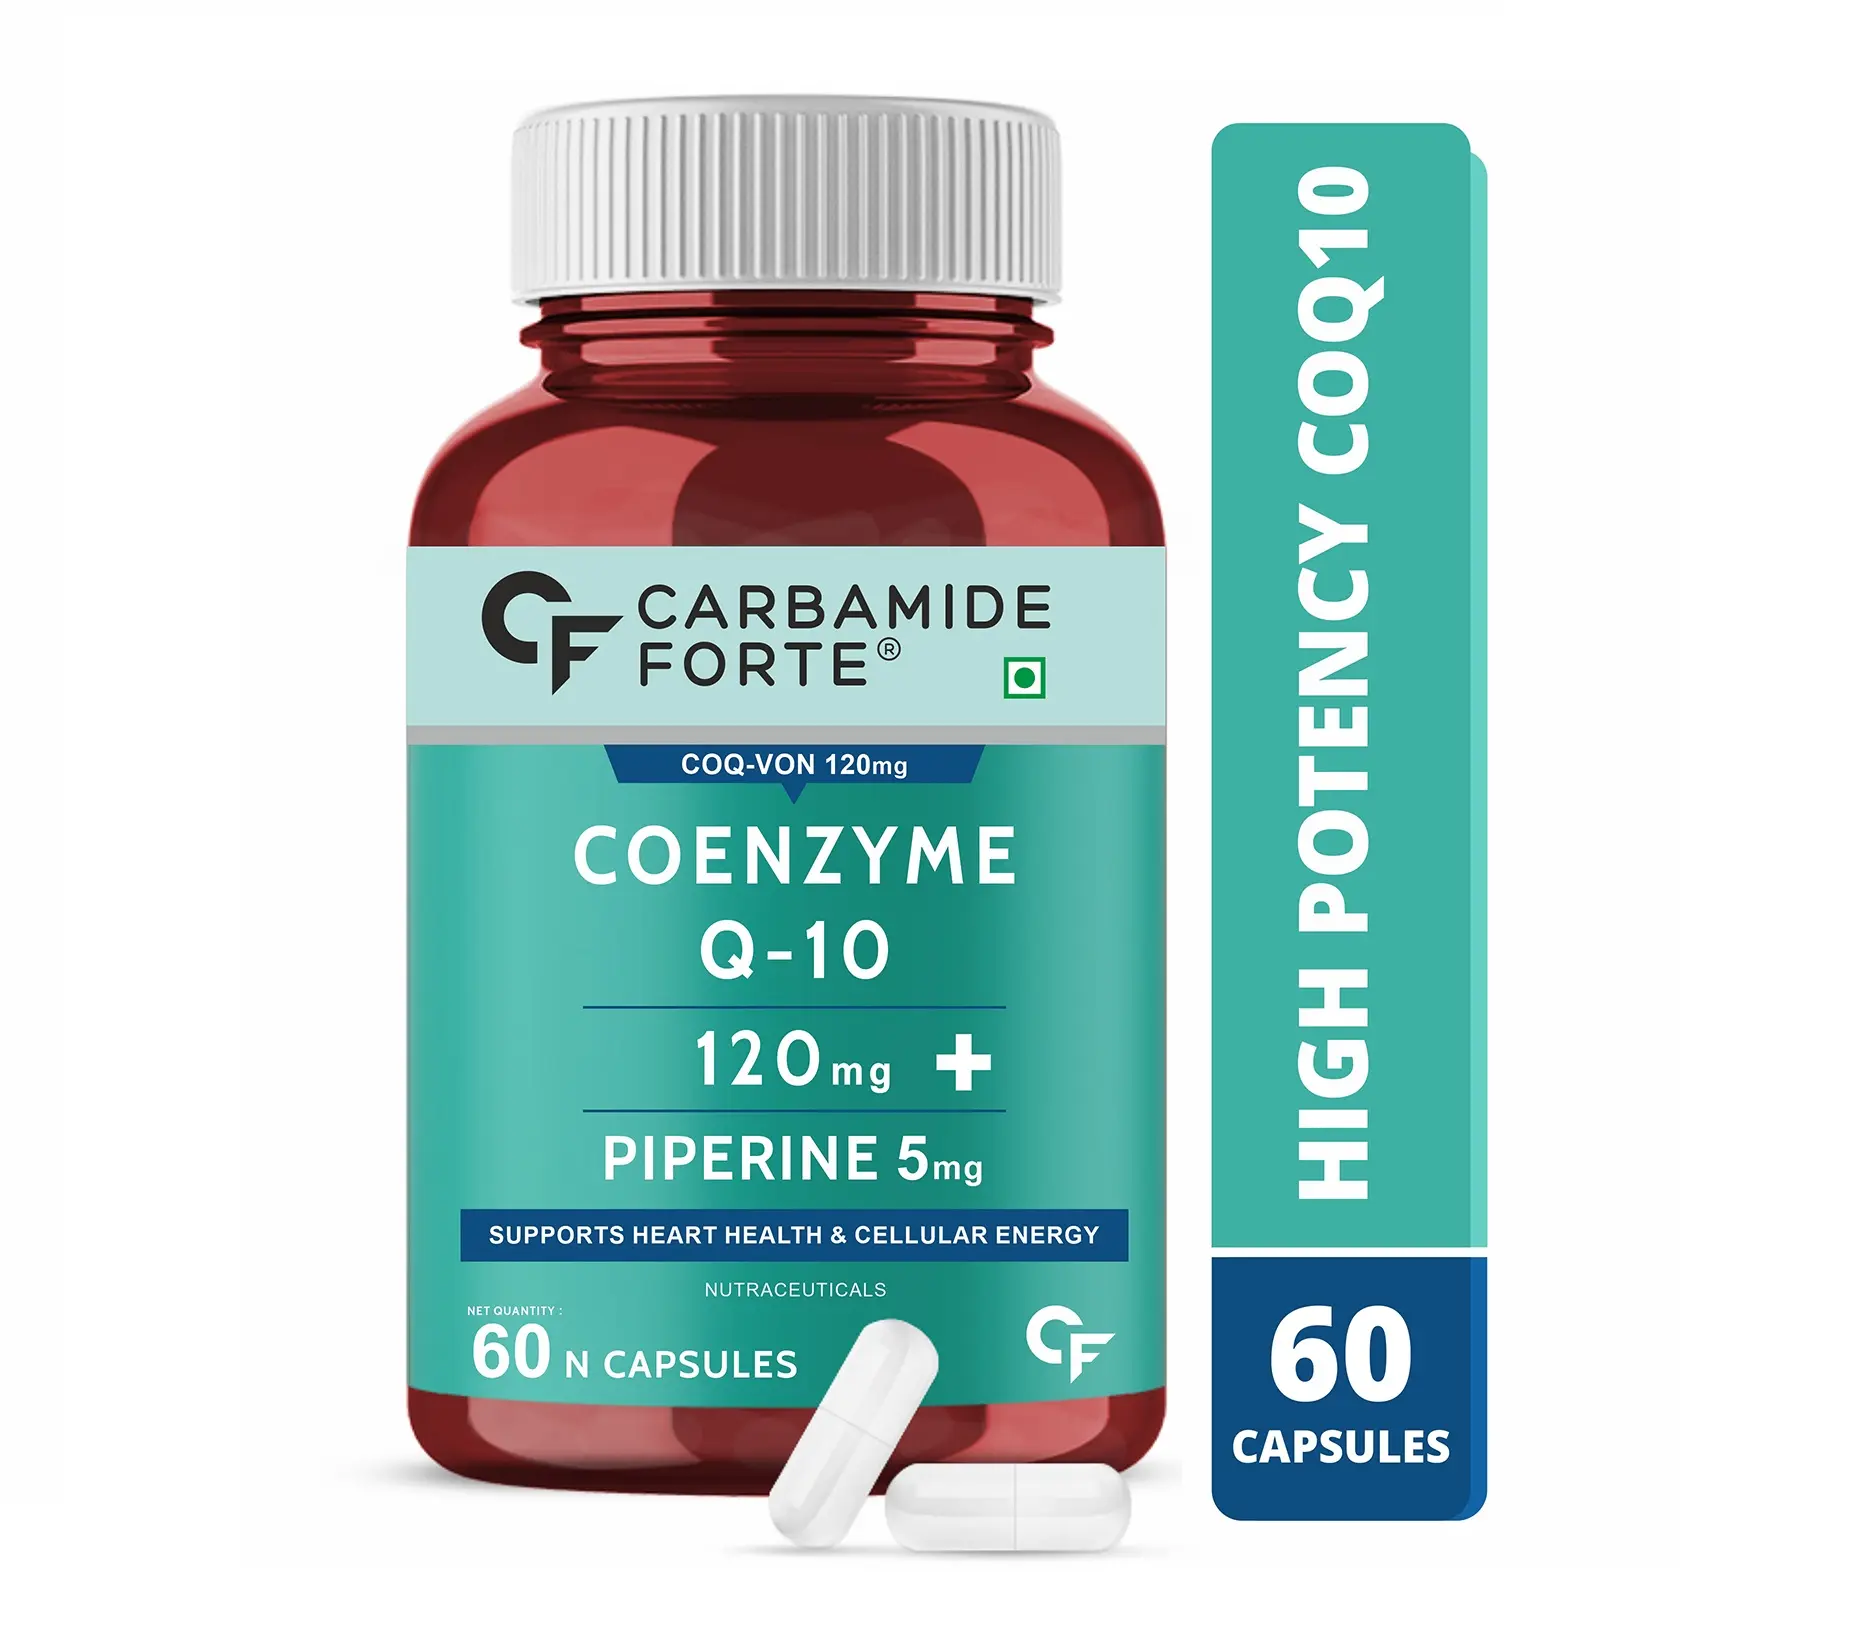 Cápsula de Coq10 coenzima Q10 - 120mg con piperina, suplemento de 5mg, la más vendida Corazón de apoyo para la salud